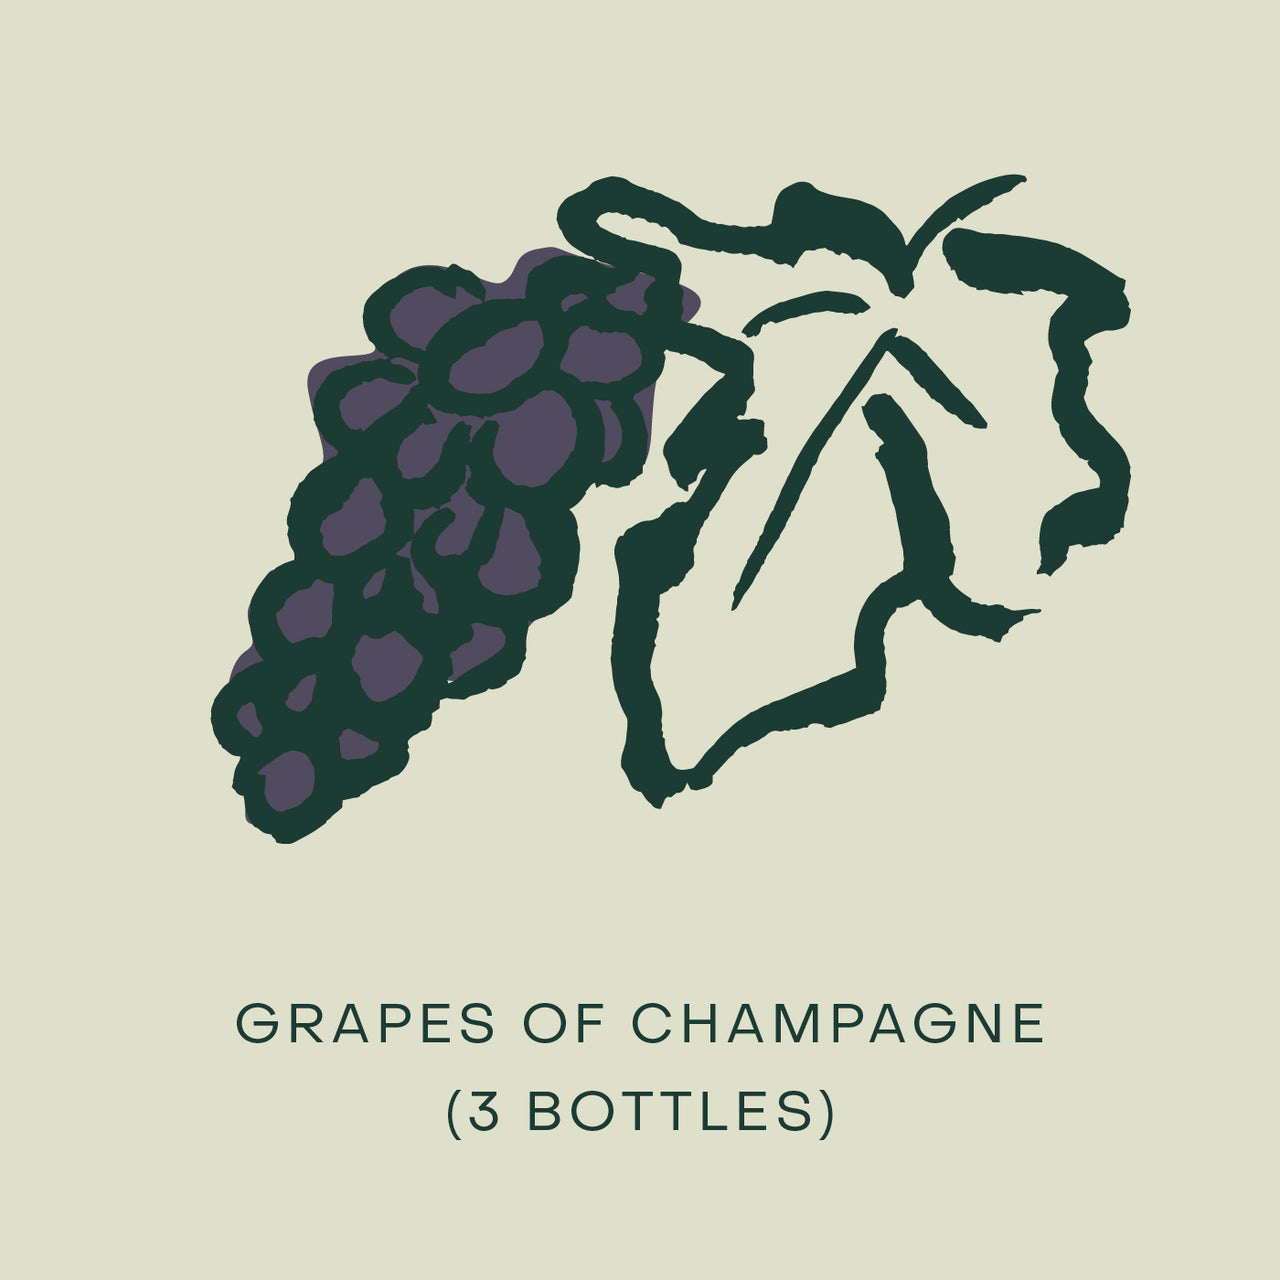 Grapes of Champagne fatcork